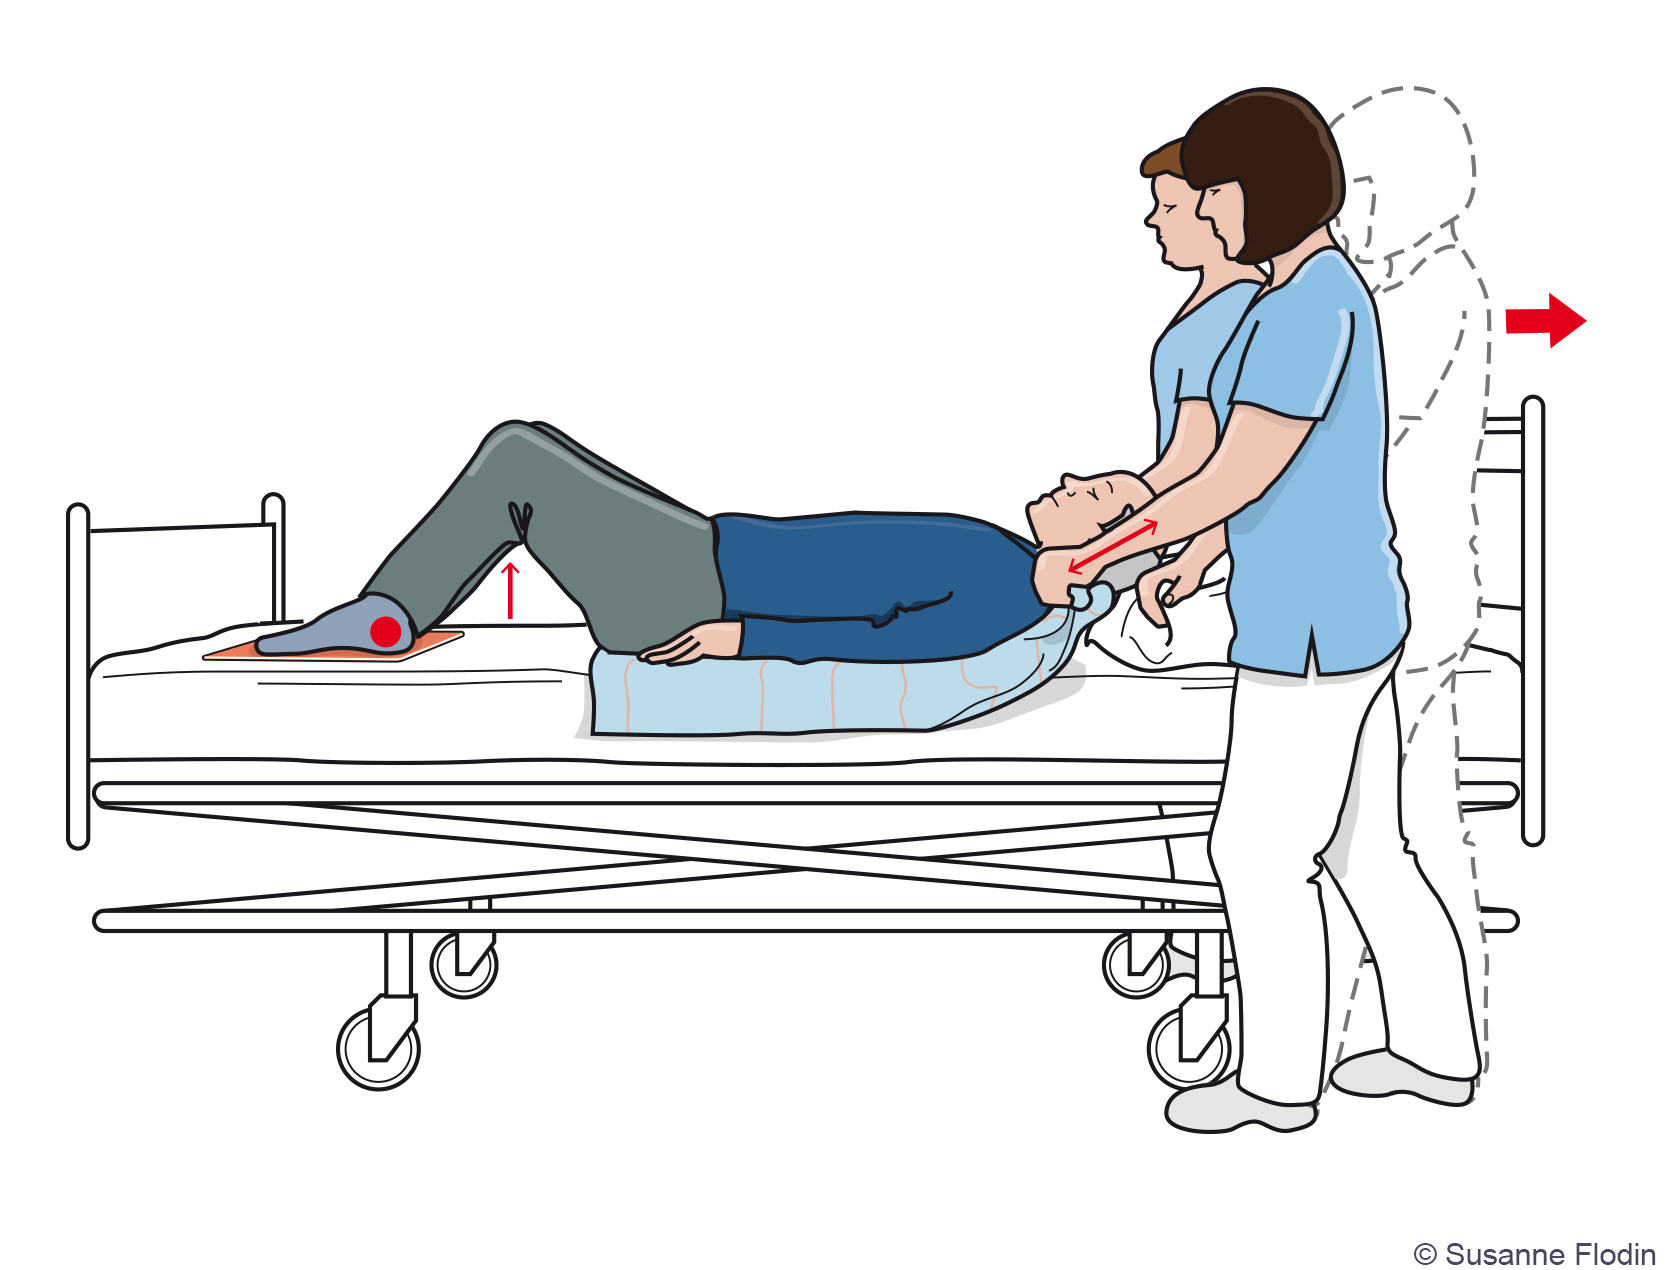 Bild som beskriver hur två vårdpersonal hjälper en patient högre upp i sängen med hjälp av glidmatta och draglakan. 